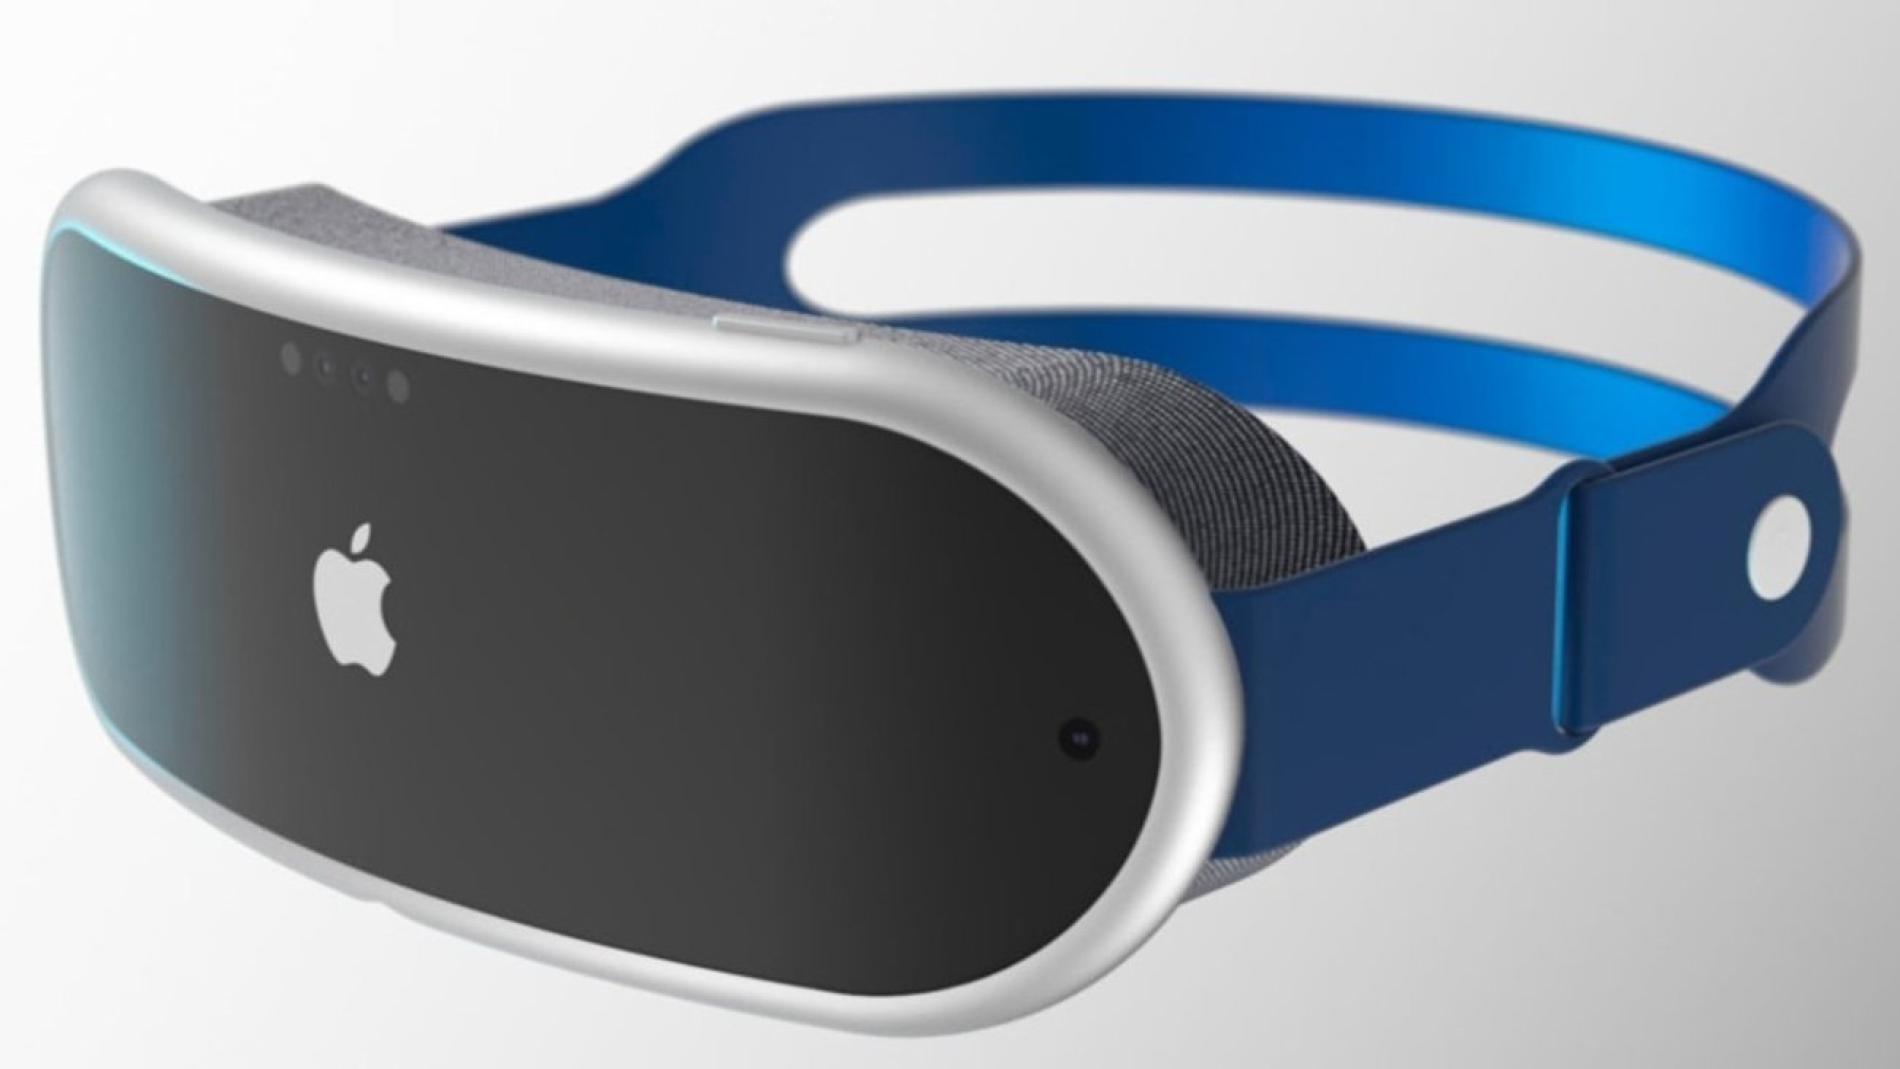 Magic Leap, nuevas gafas de realidad aumentada con Google en la sombra, Gadgets